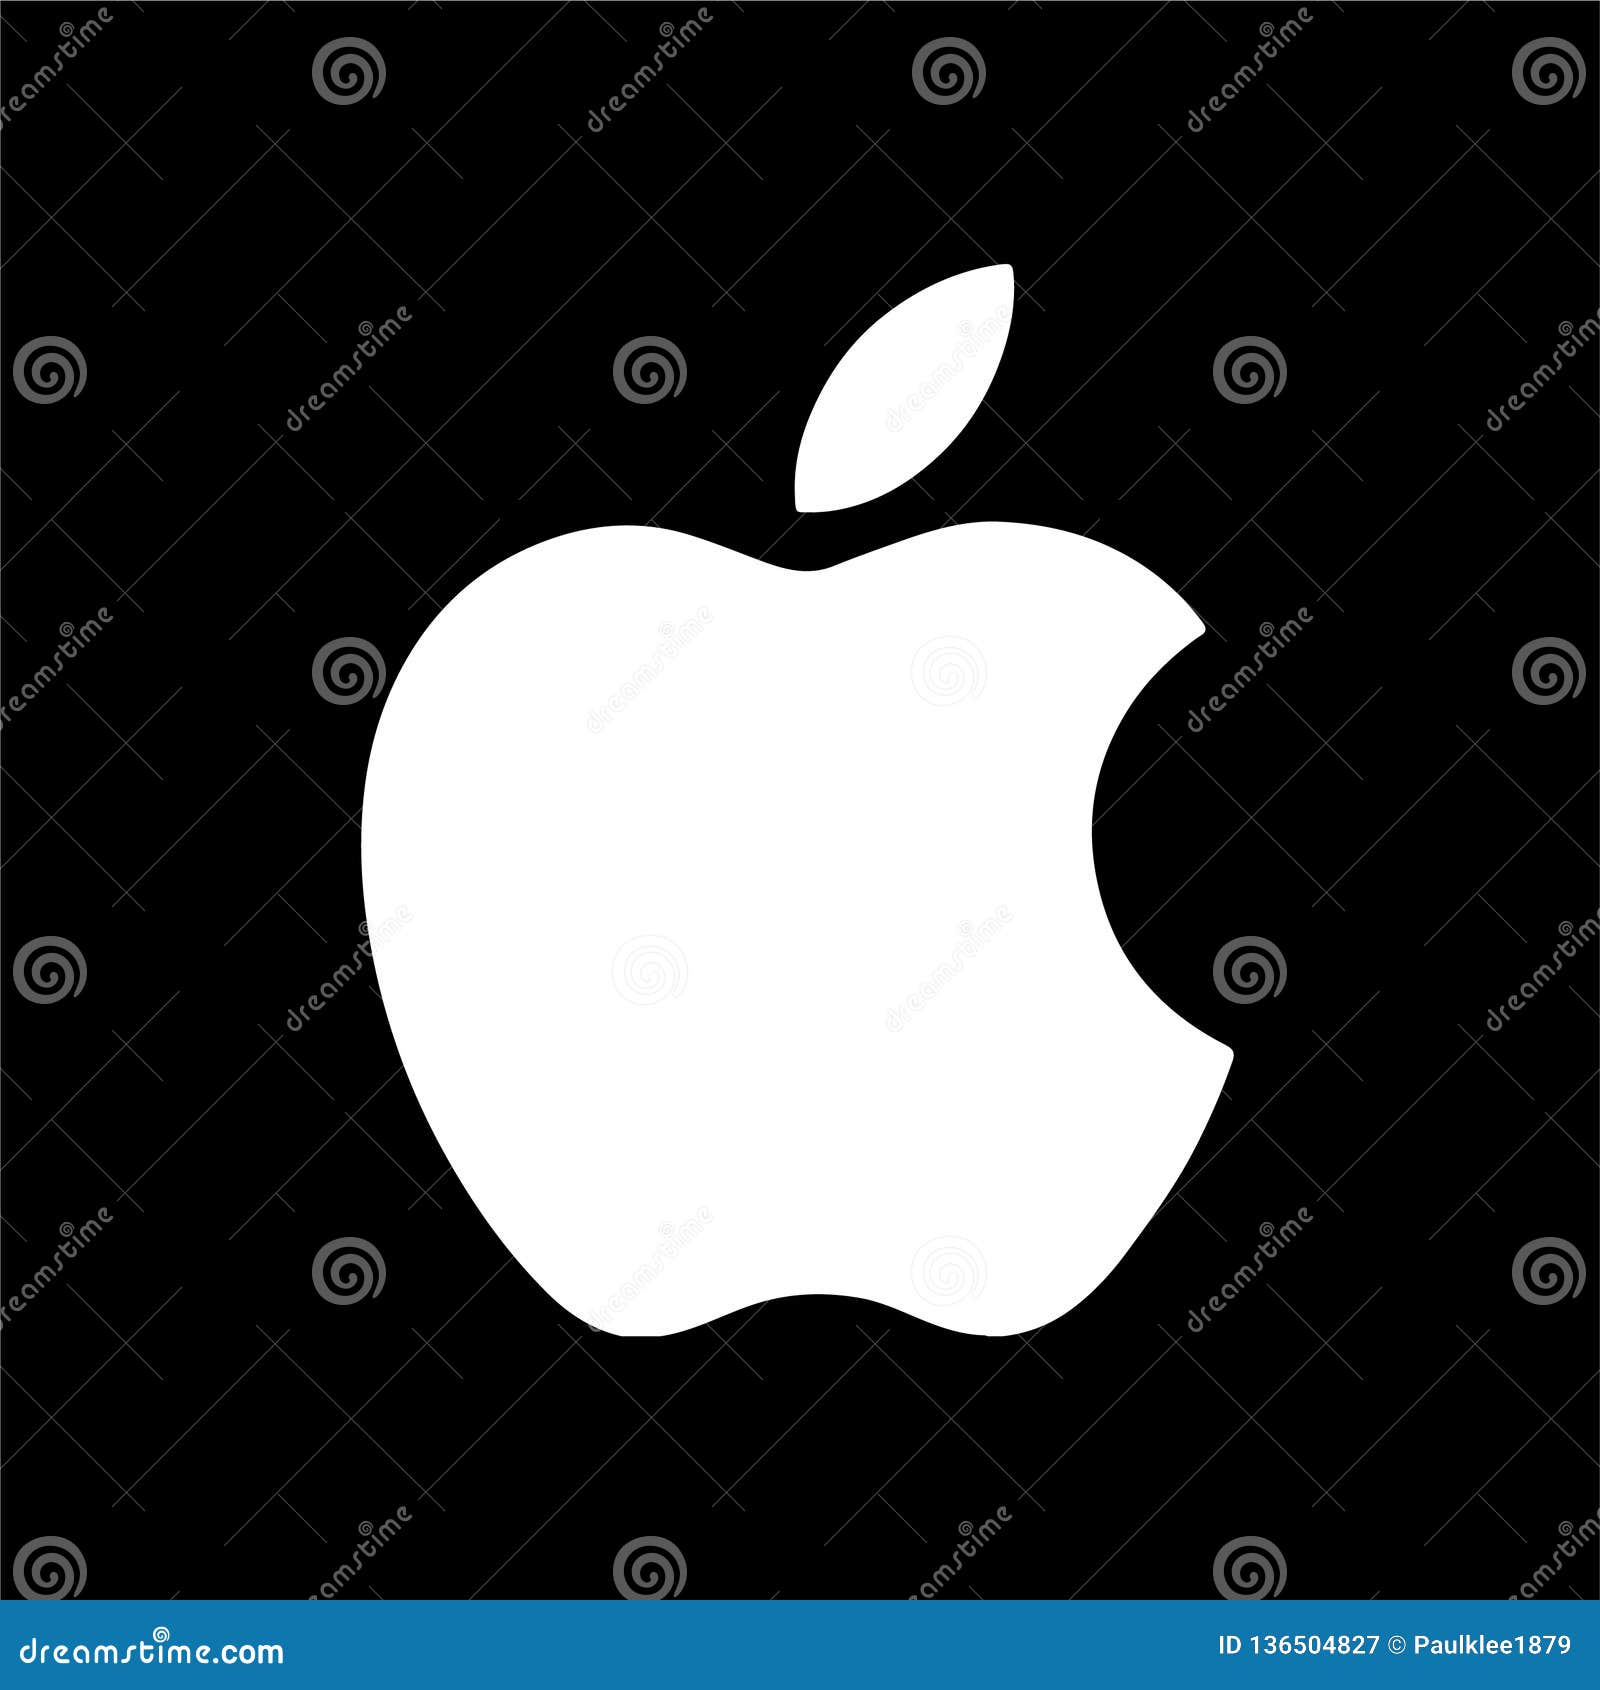 Apple finder icon vector - tokyoholden